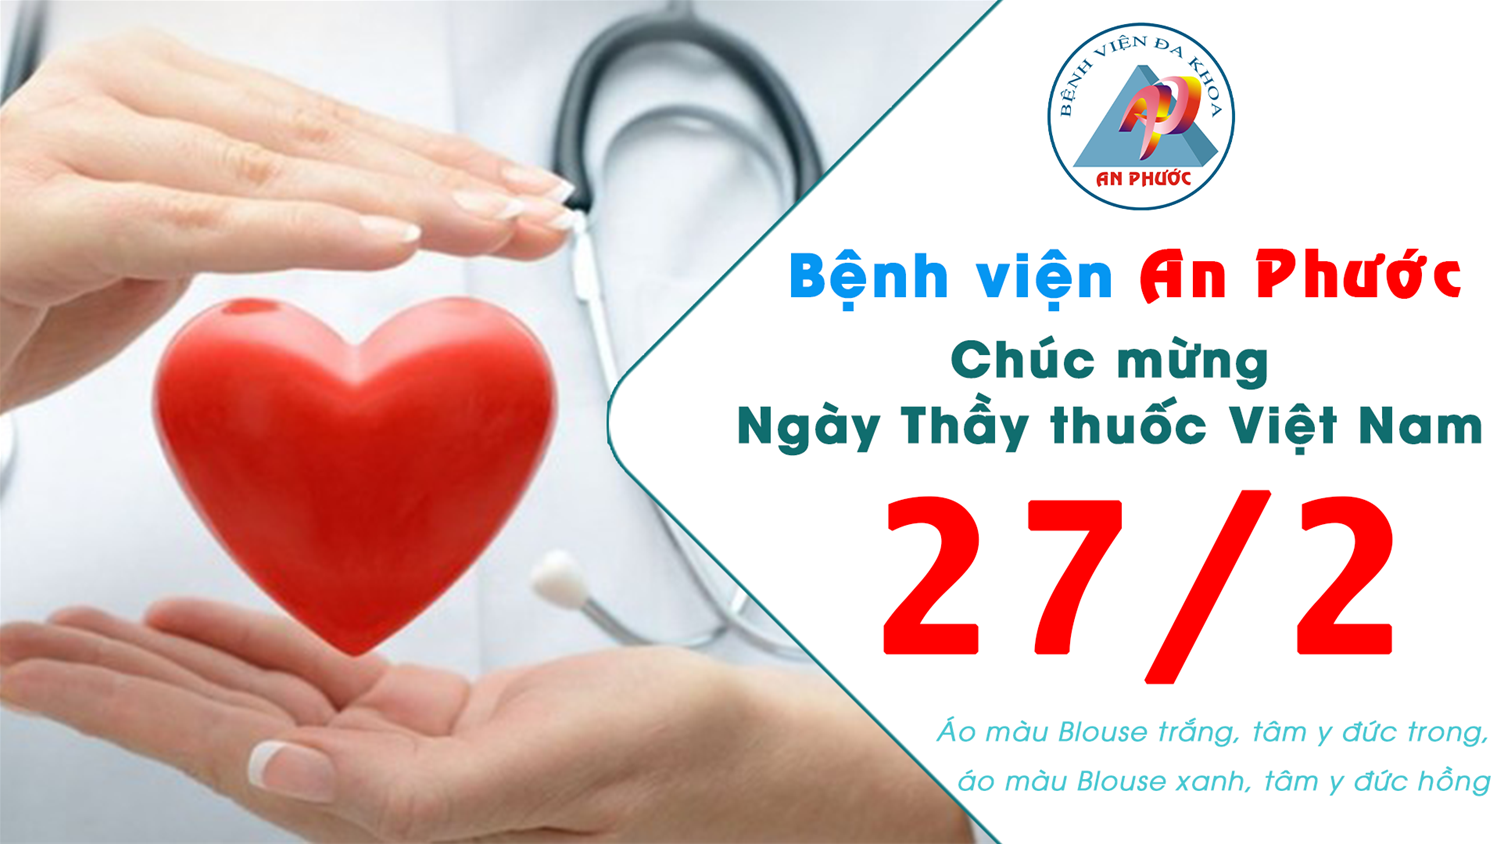 An Phuoc Hospital là một trong những bệnh viện hàng đầu tại Việt Nam về chăm sóc sức khỏe. Tại đây, chúng tôi cung cấp những loại thuốc hữu hiệu và an toàn nhất để đảm bảo rằng quá trình điều trị của bạn sẽ được tối ưu hoá. Xem hình ảnh liên quan đến \